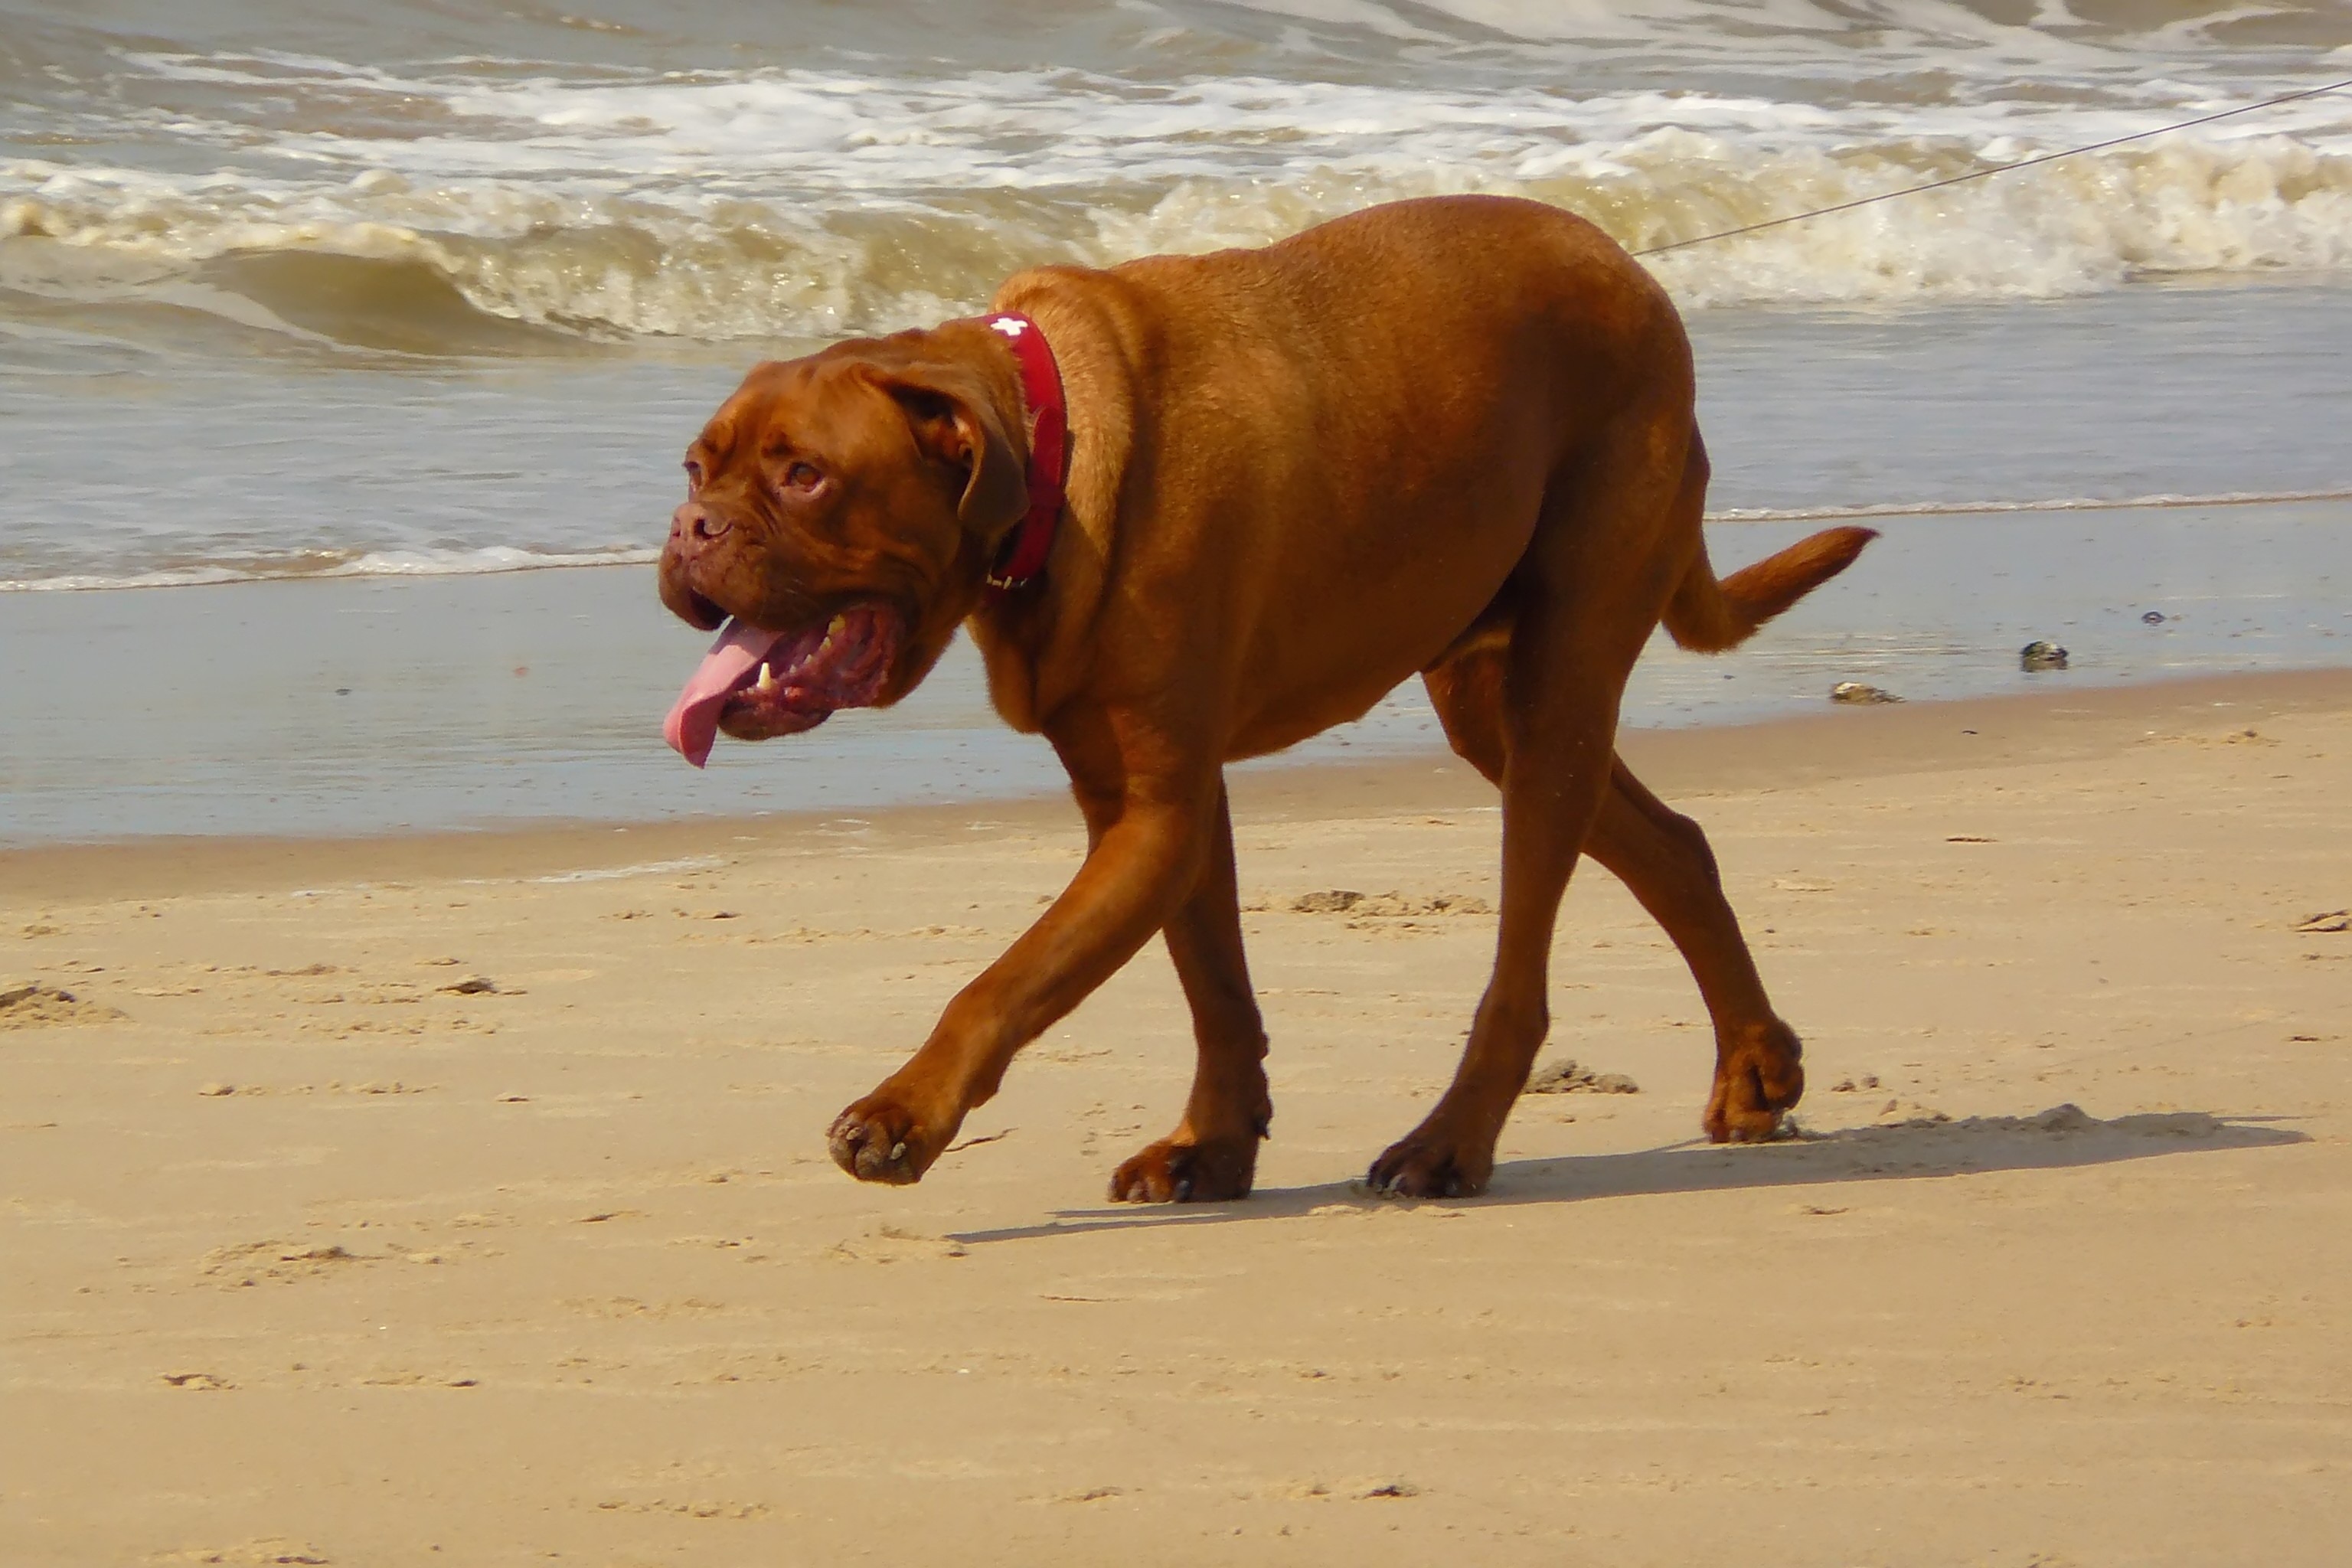 Pet, Animal, Beach, Dog, Ocean, HQ Photo